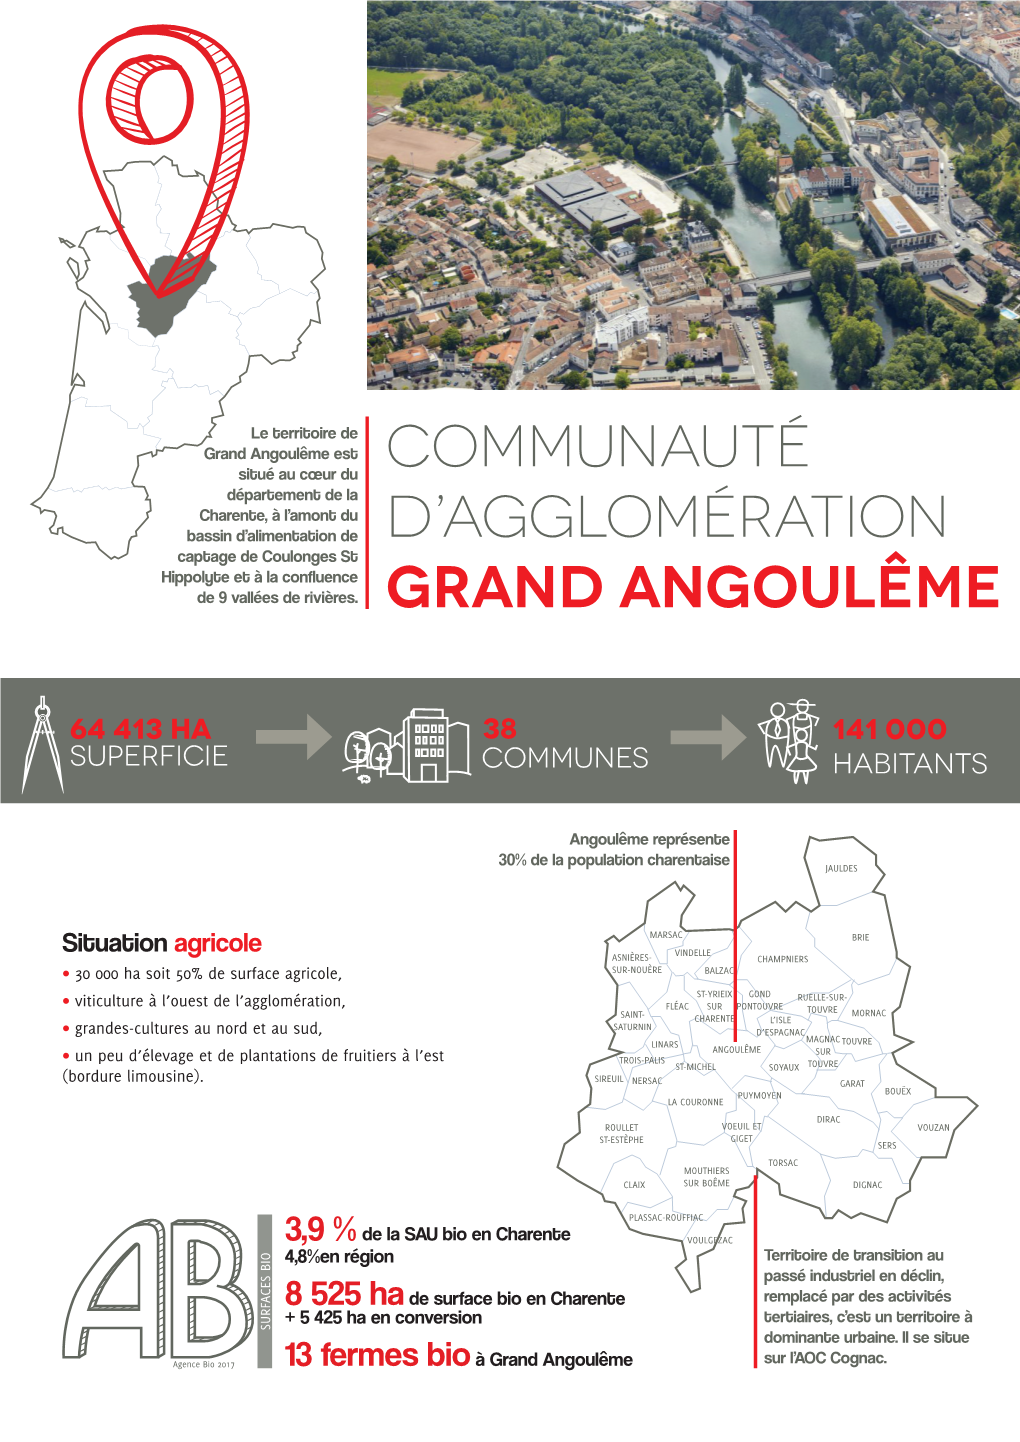 Communauté D'agglomération Grand Angoulême